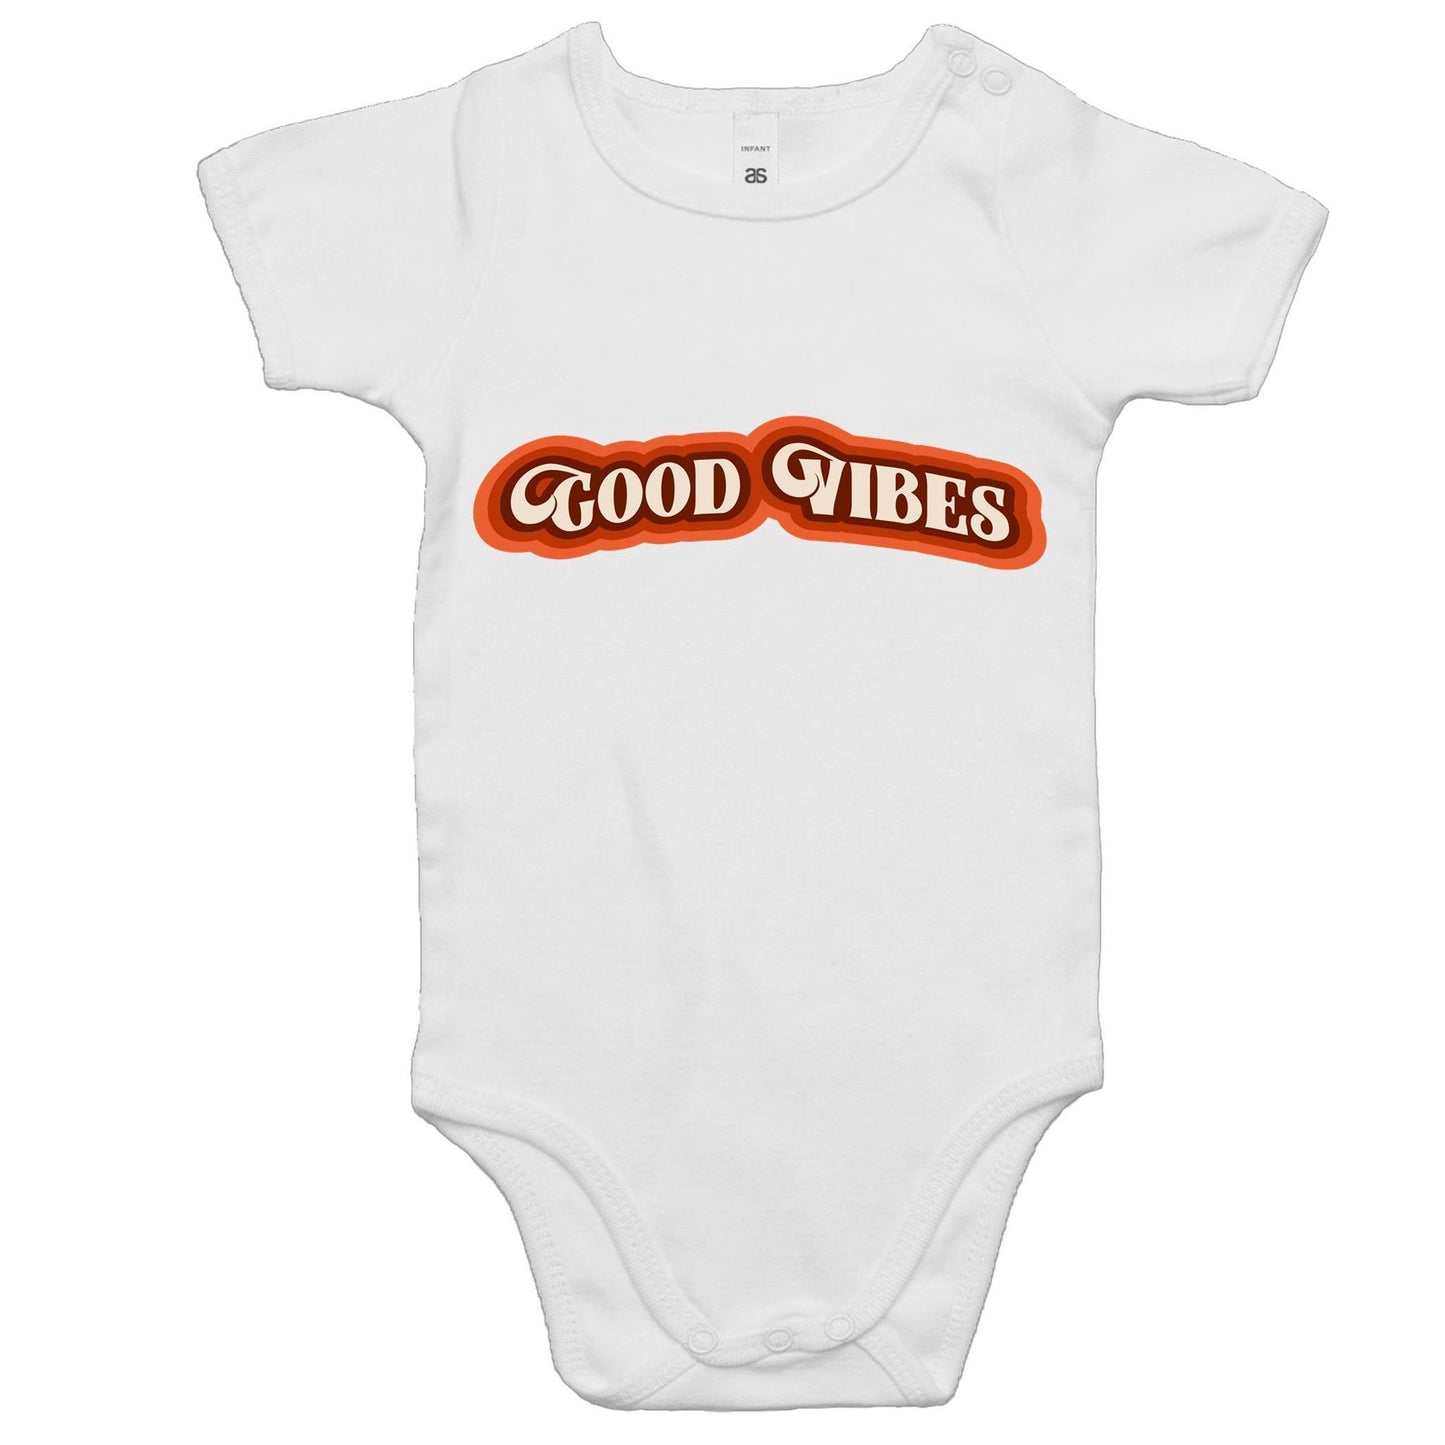 Good Vibes - Baby Bodysuit White Baby Bodysuit kids Retro